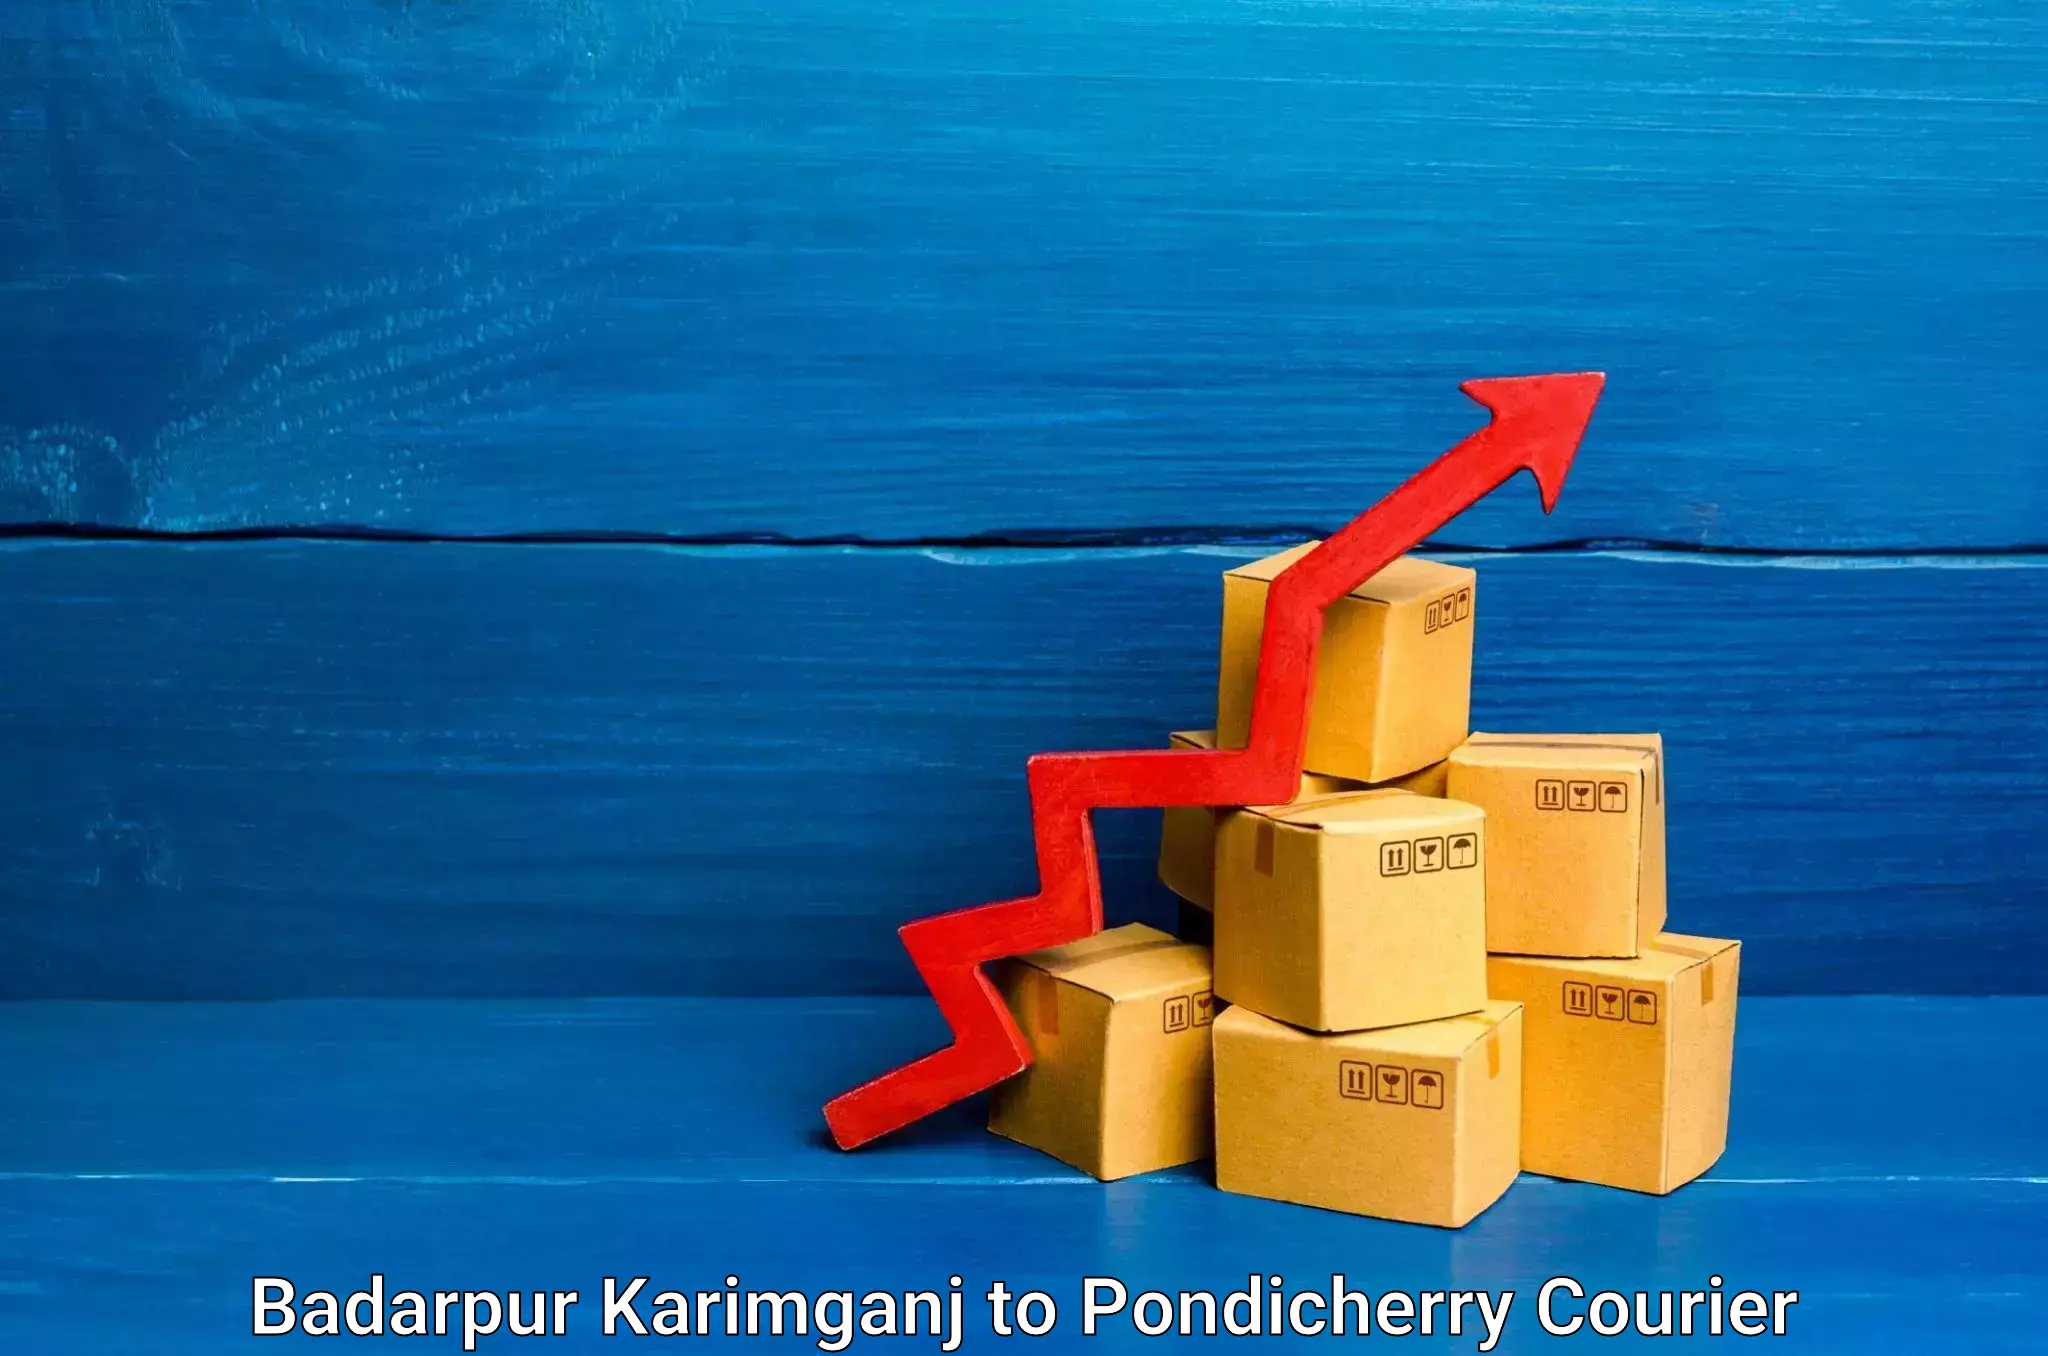 Speedy delivery service Badarpur Karimganj to Pondicherry University